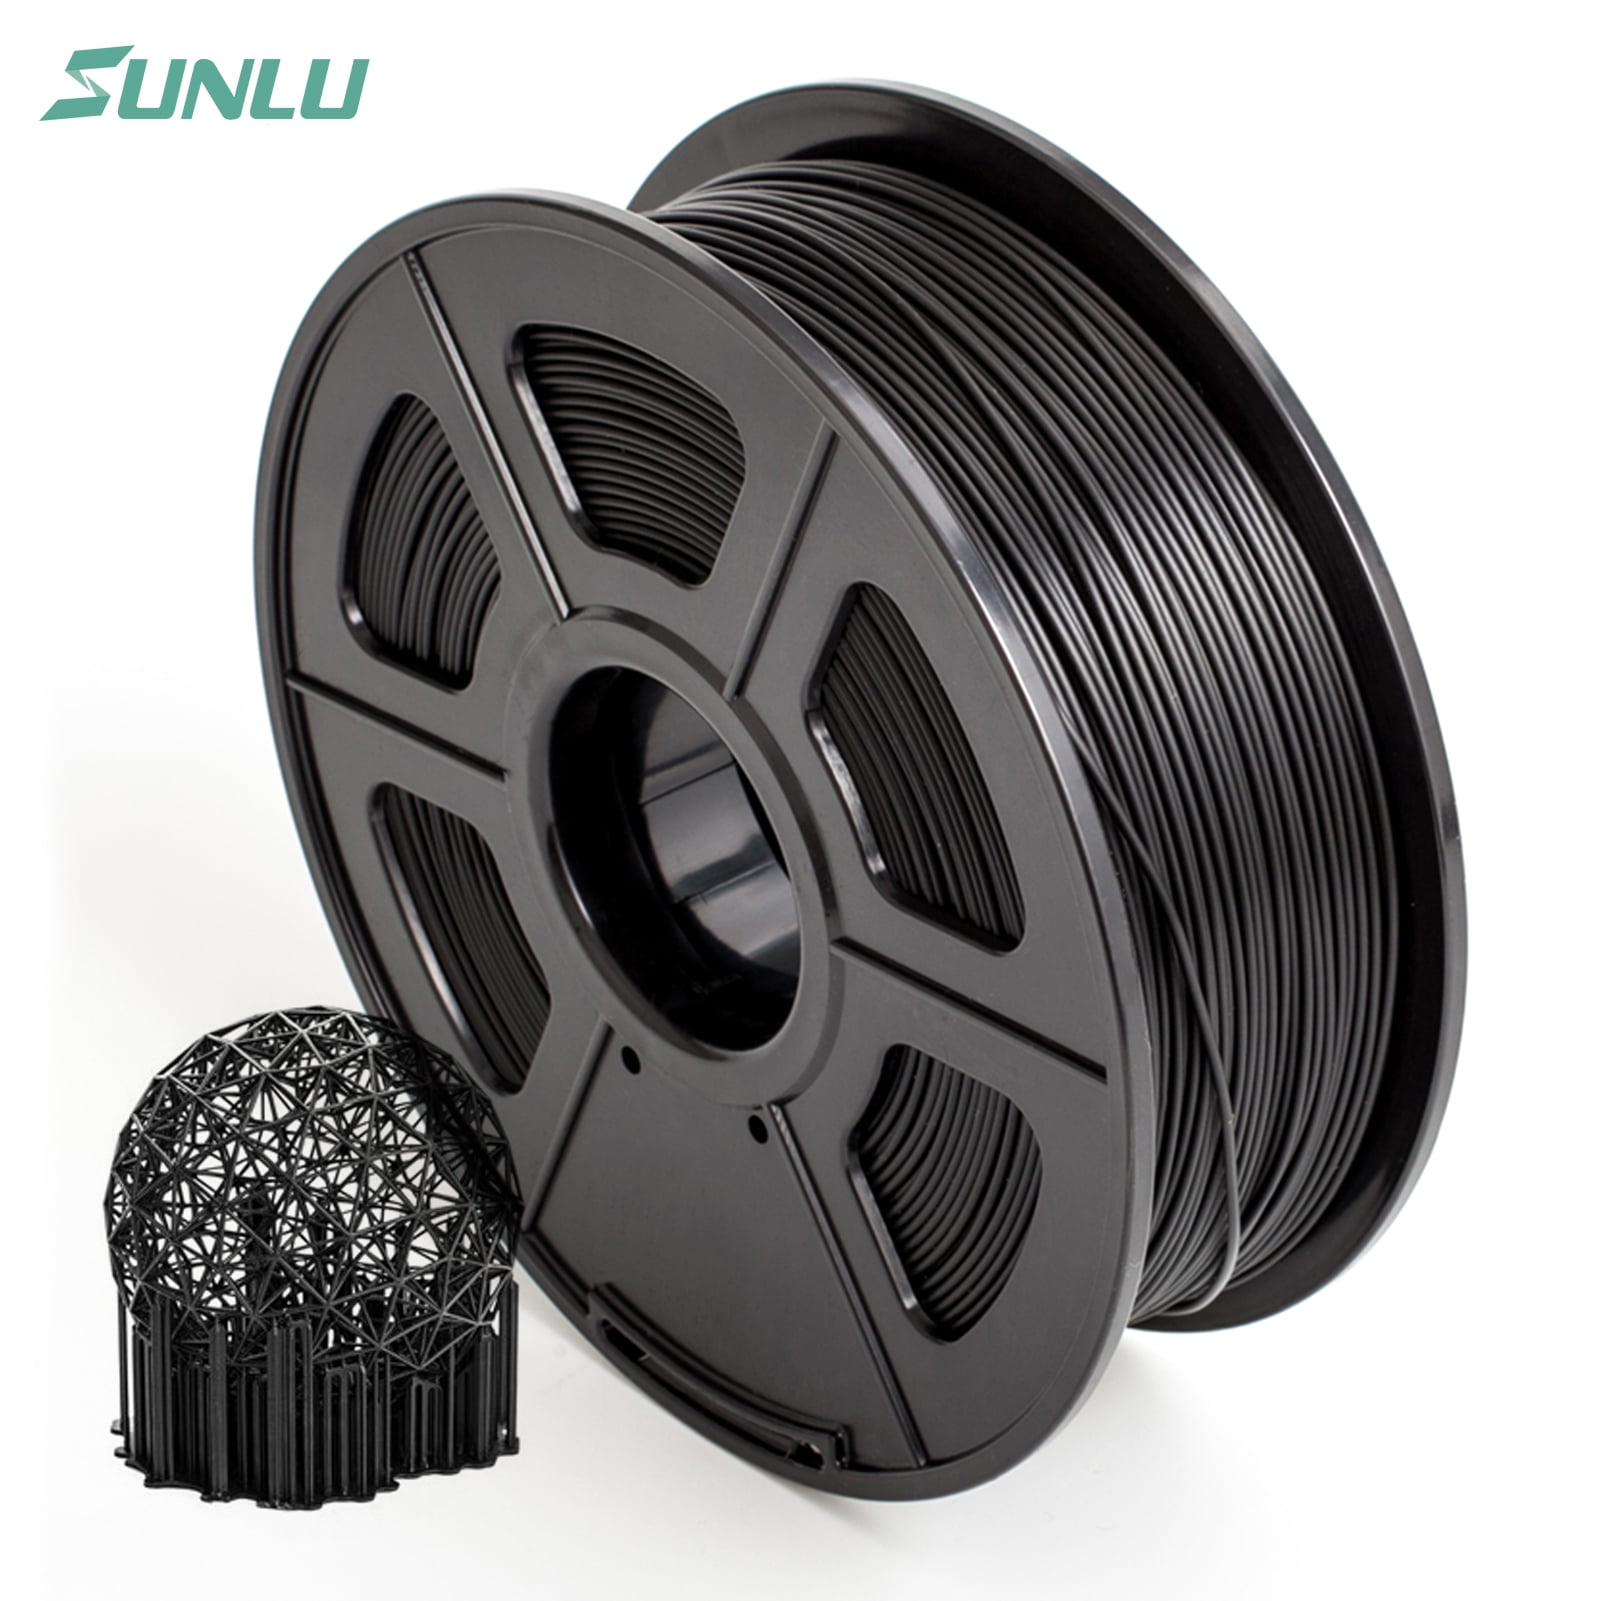 2.2 LBS 1KG Spool 3D Filament,Black PLA+ 3D Printing Filament Low Odor 1.75mm PLA Filament Dimensional Accuracy +/- 0.02 mm SUNLU 3D Printer Filament PLA Plus